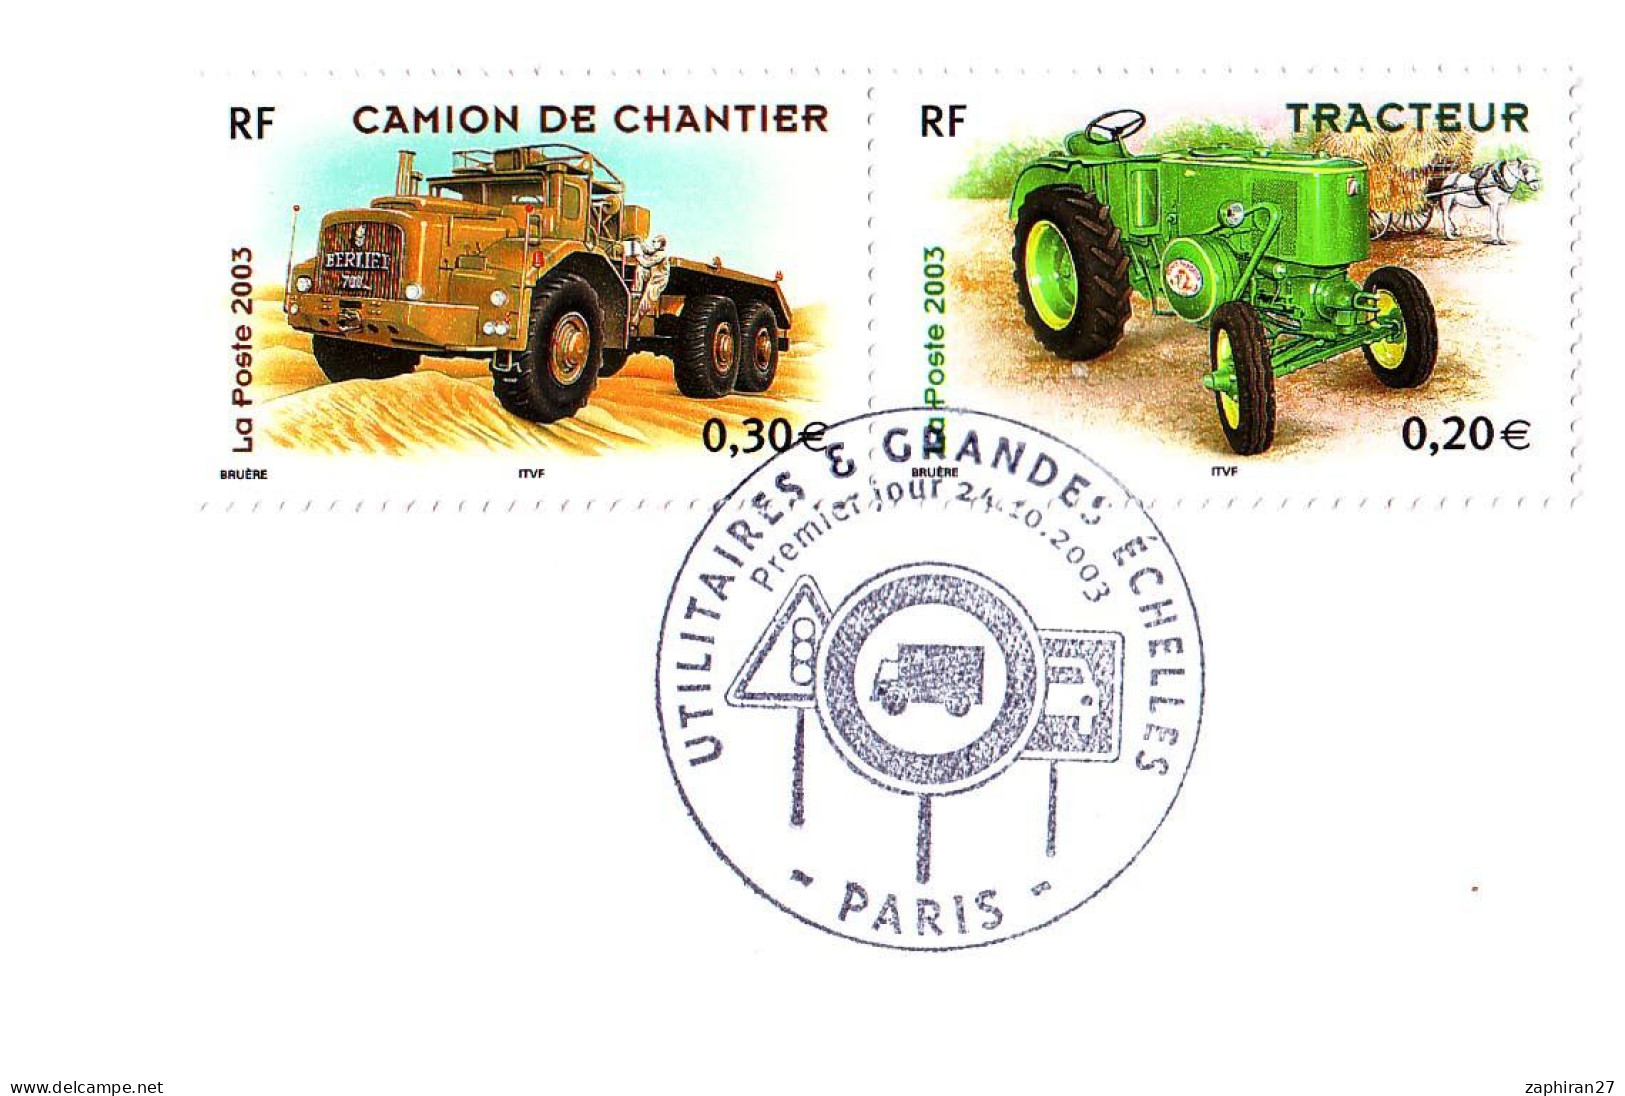 CAT TRANSORT : PARIS UTILITAIRES ET GRANDES ECHELLES / CAMION DE CHANTIER ET TRACTEUR (24-10-2003) #517# - Vrachtwagens